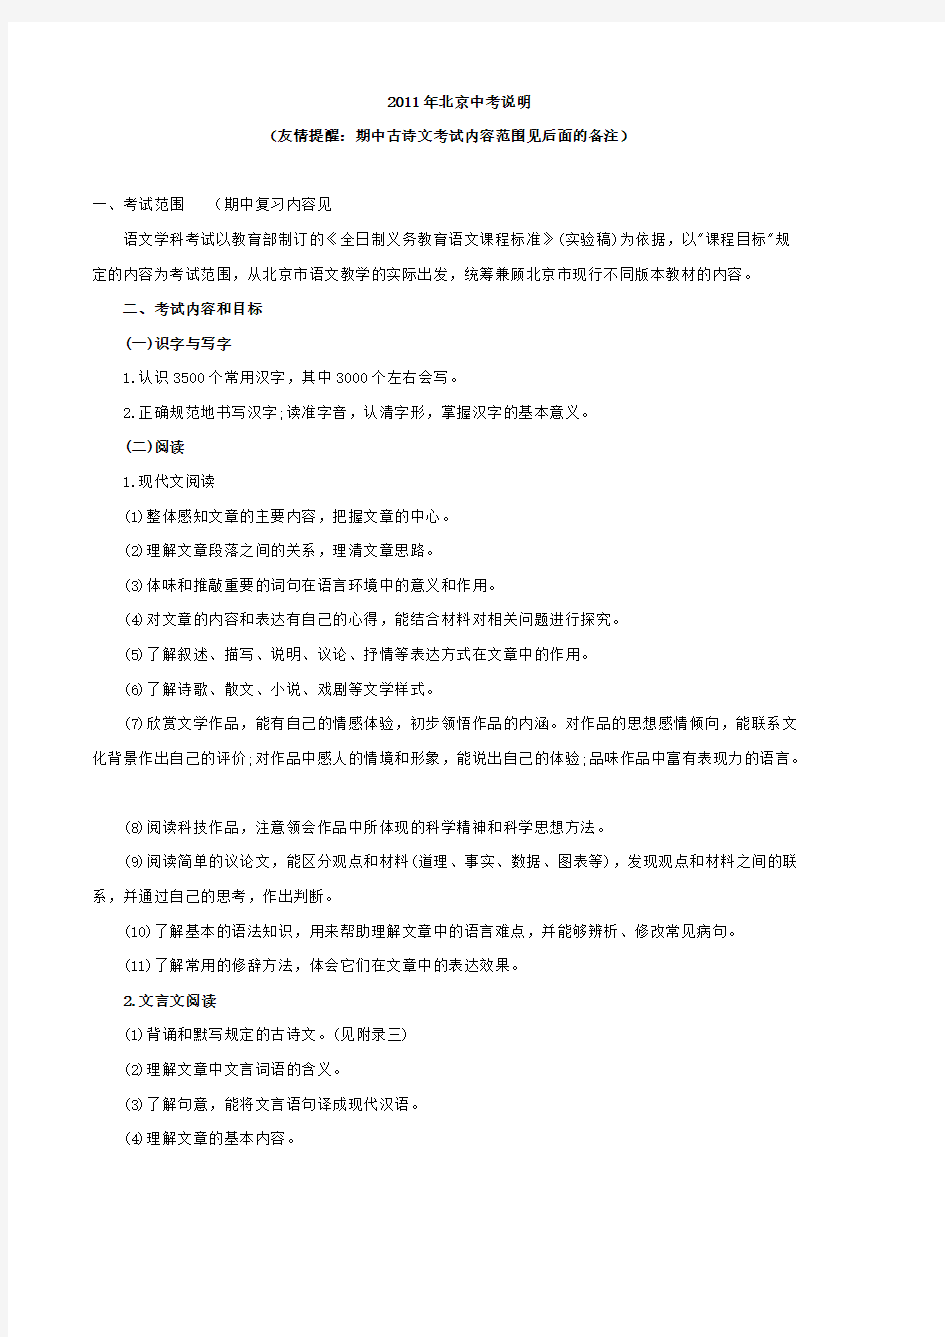 [VIP专享]2011北京市语文中考说明